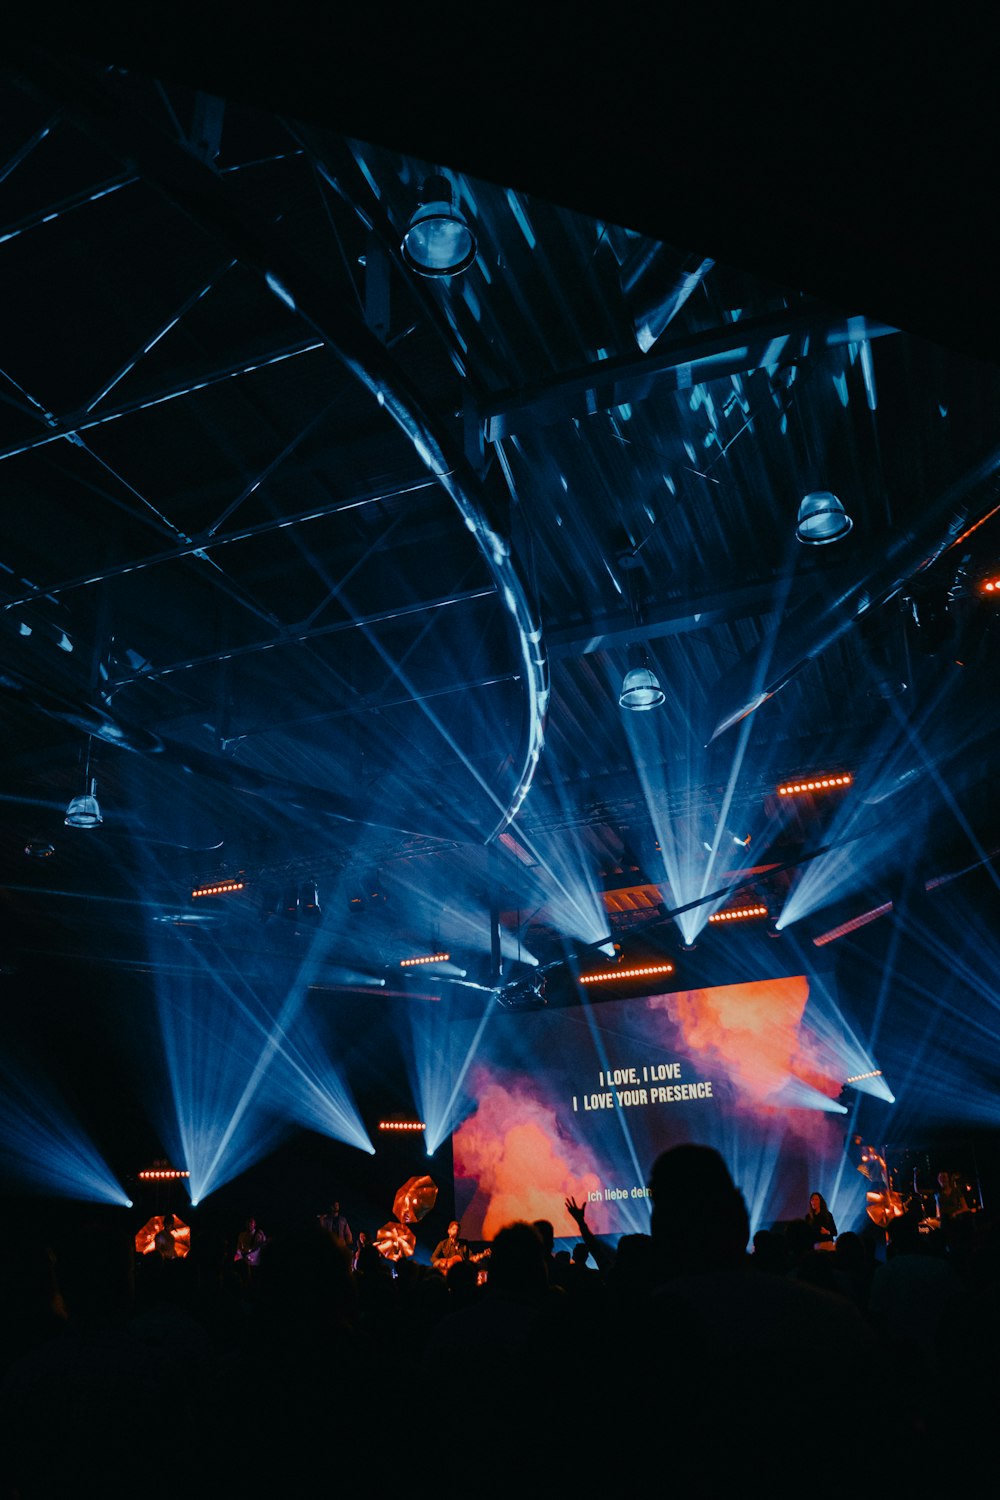 tela do projetor exibindo texto no palco com luzes